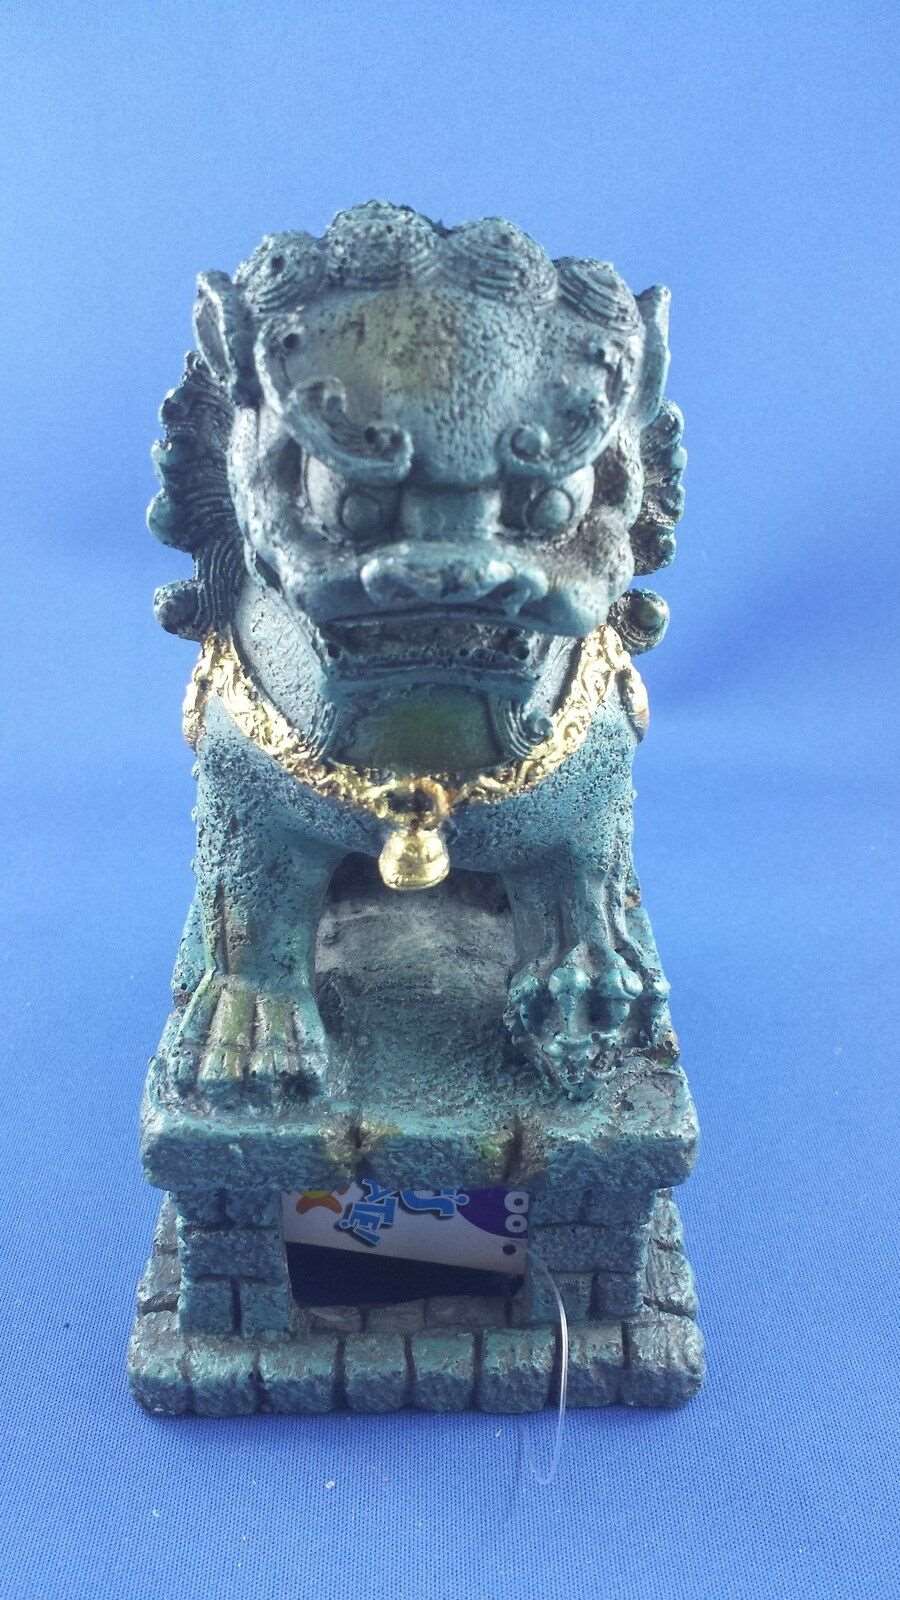 Kazoo Temple Lion in Jade Aquarium Ornament large